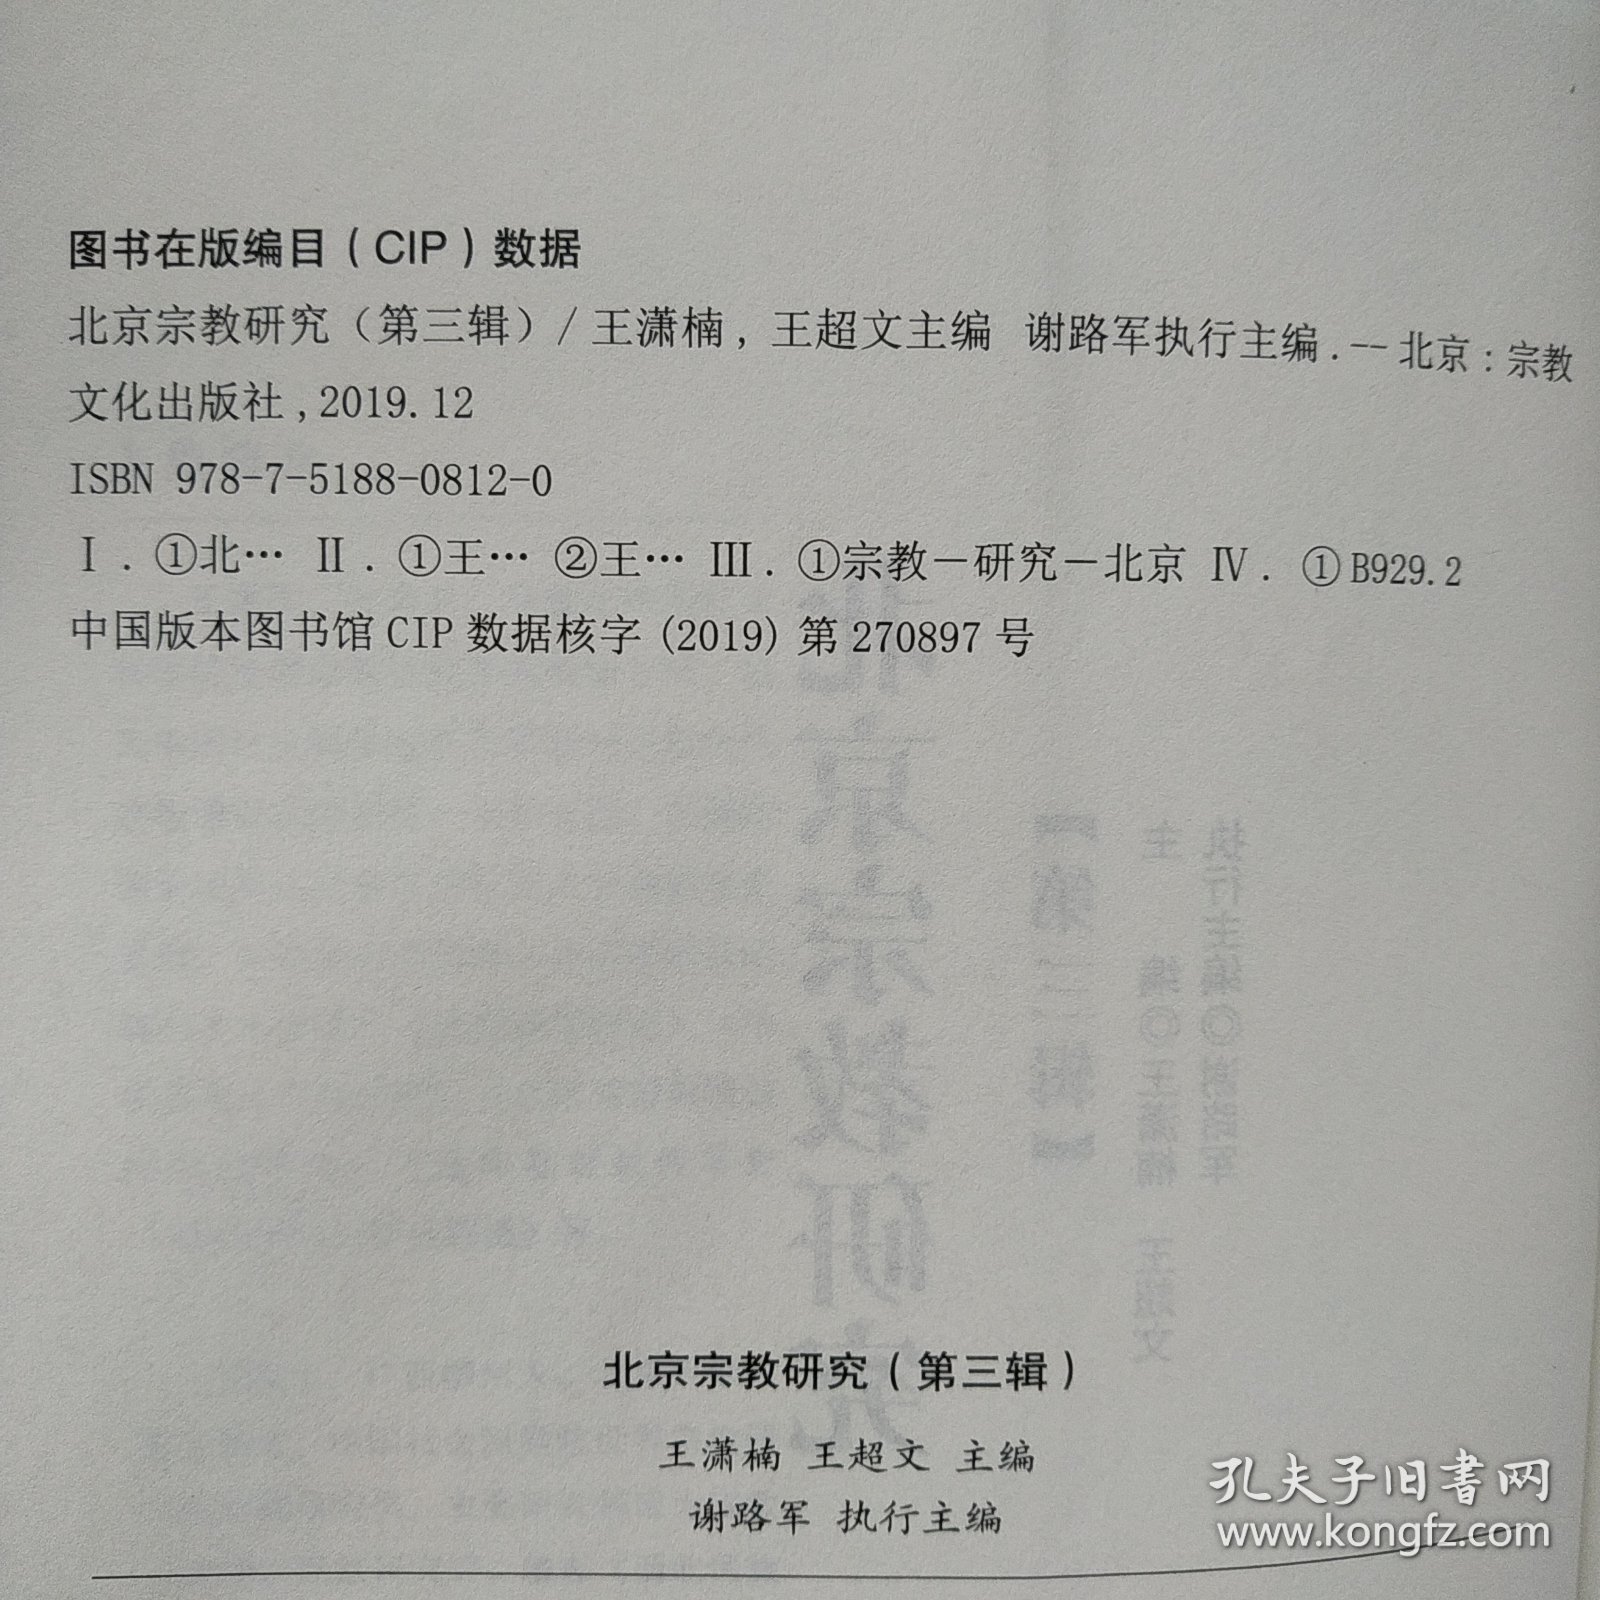 北京宗教研究（第3辑）